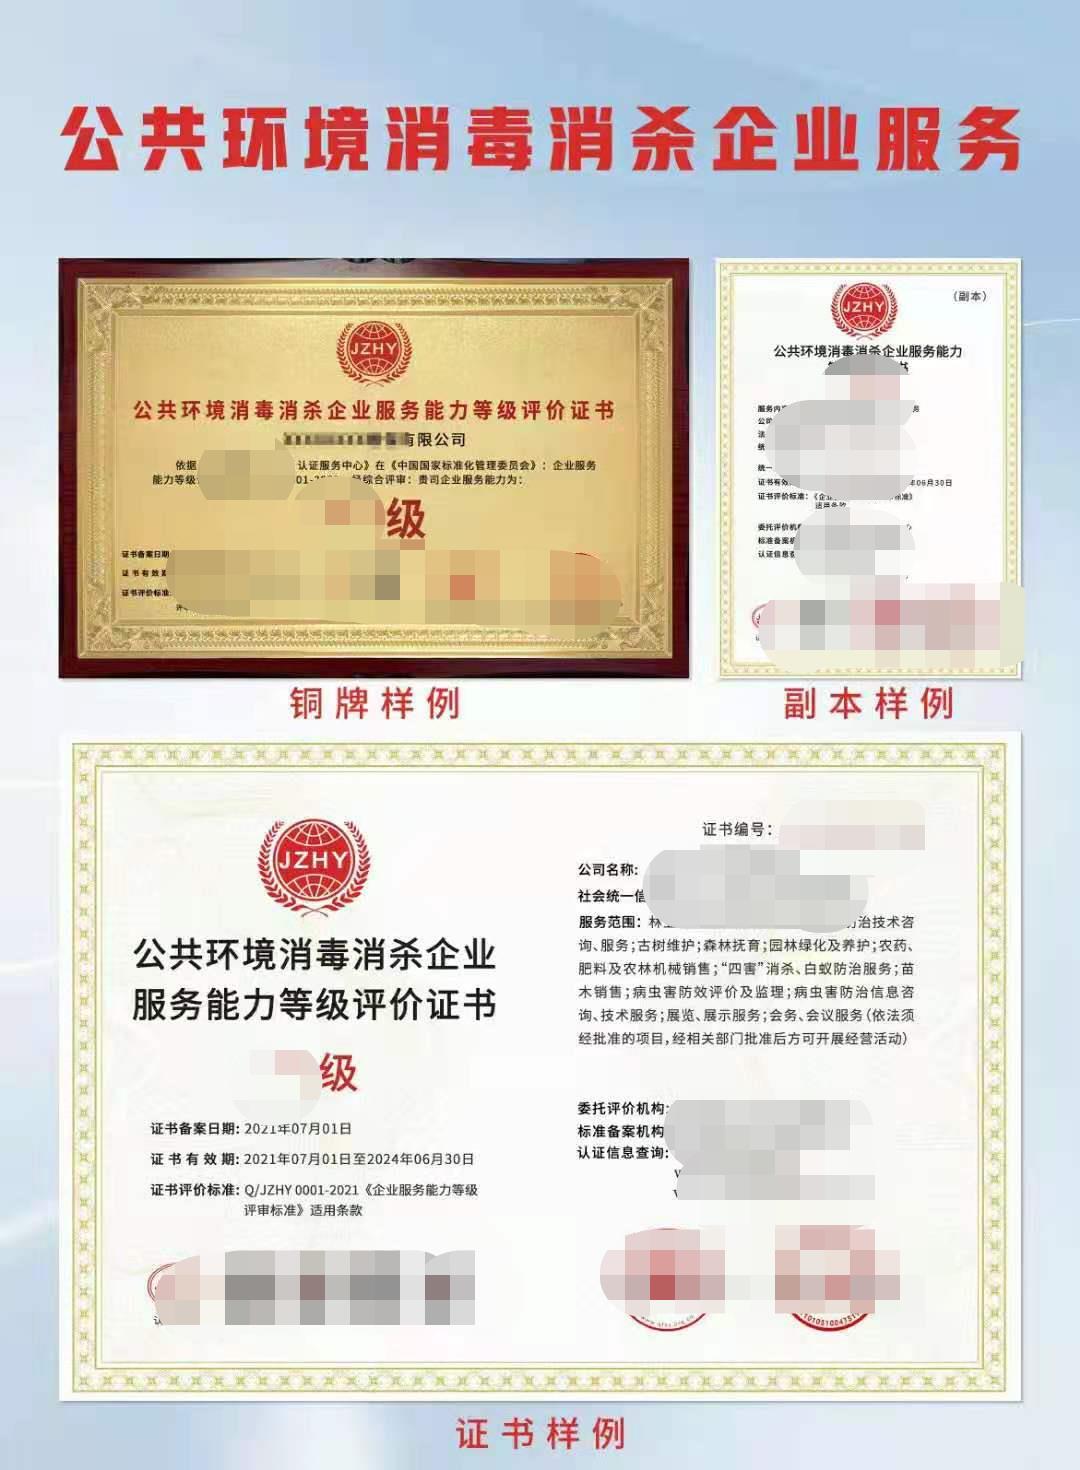 武汉公共环境消毒消杀企业服务能力等级评价证书